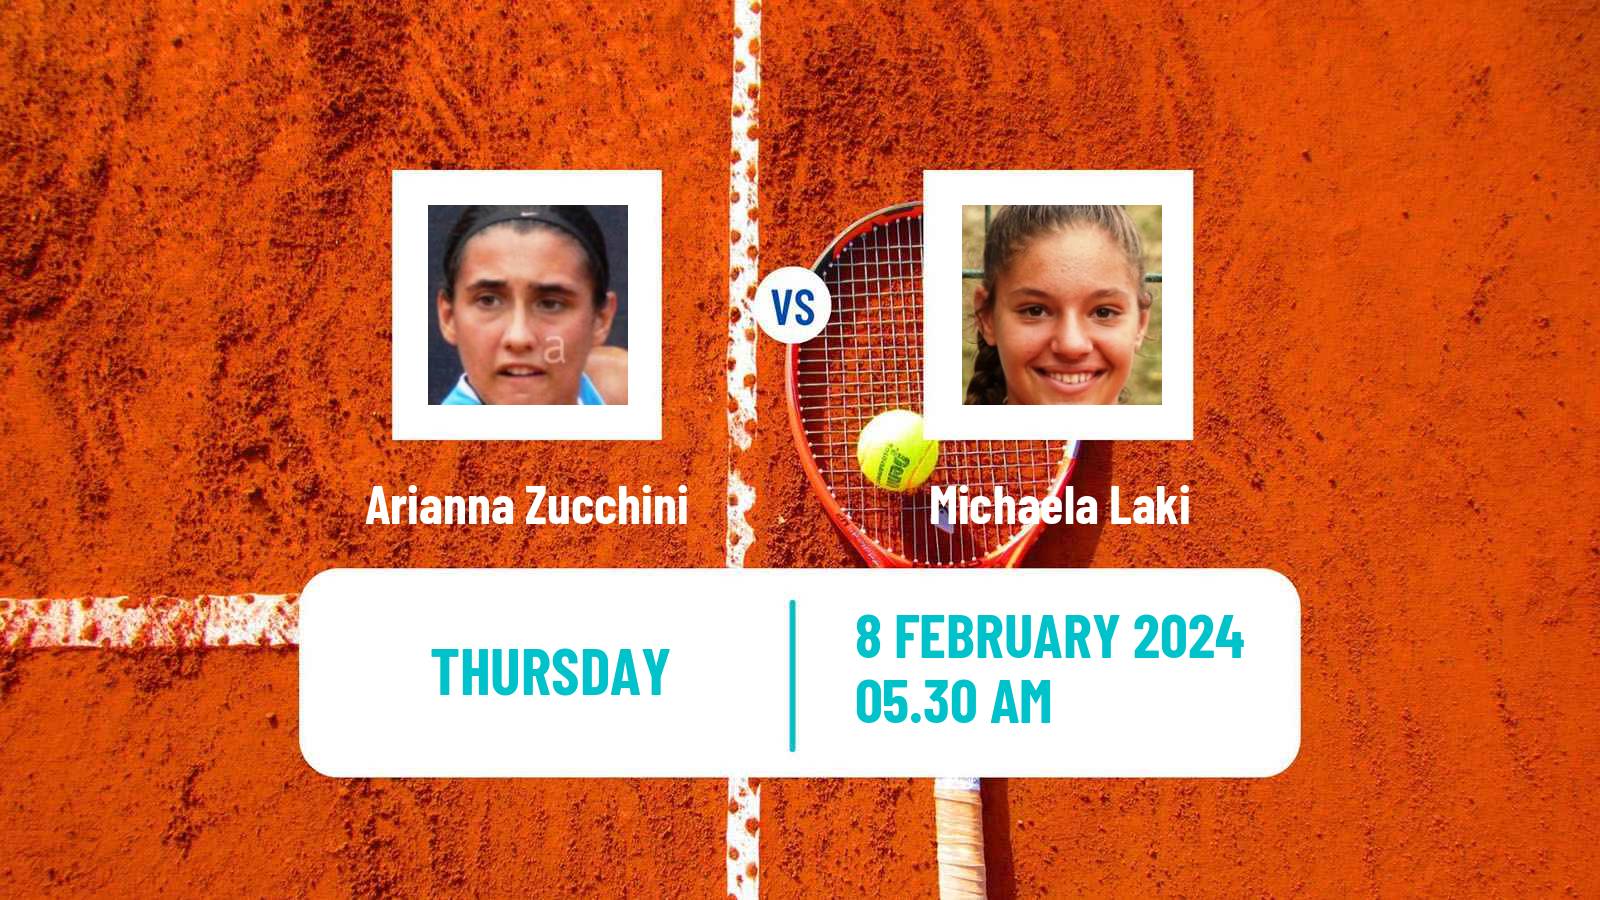 Tennis ITF W15 Monastir 4 Women Arianna Zucchini - Michaela Laki